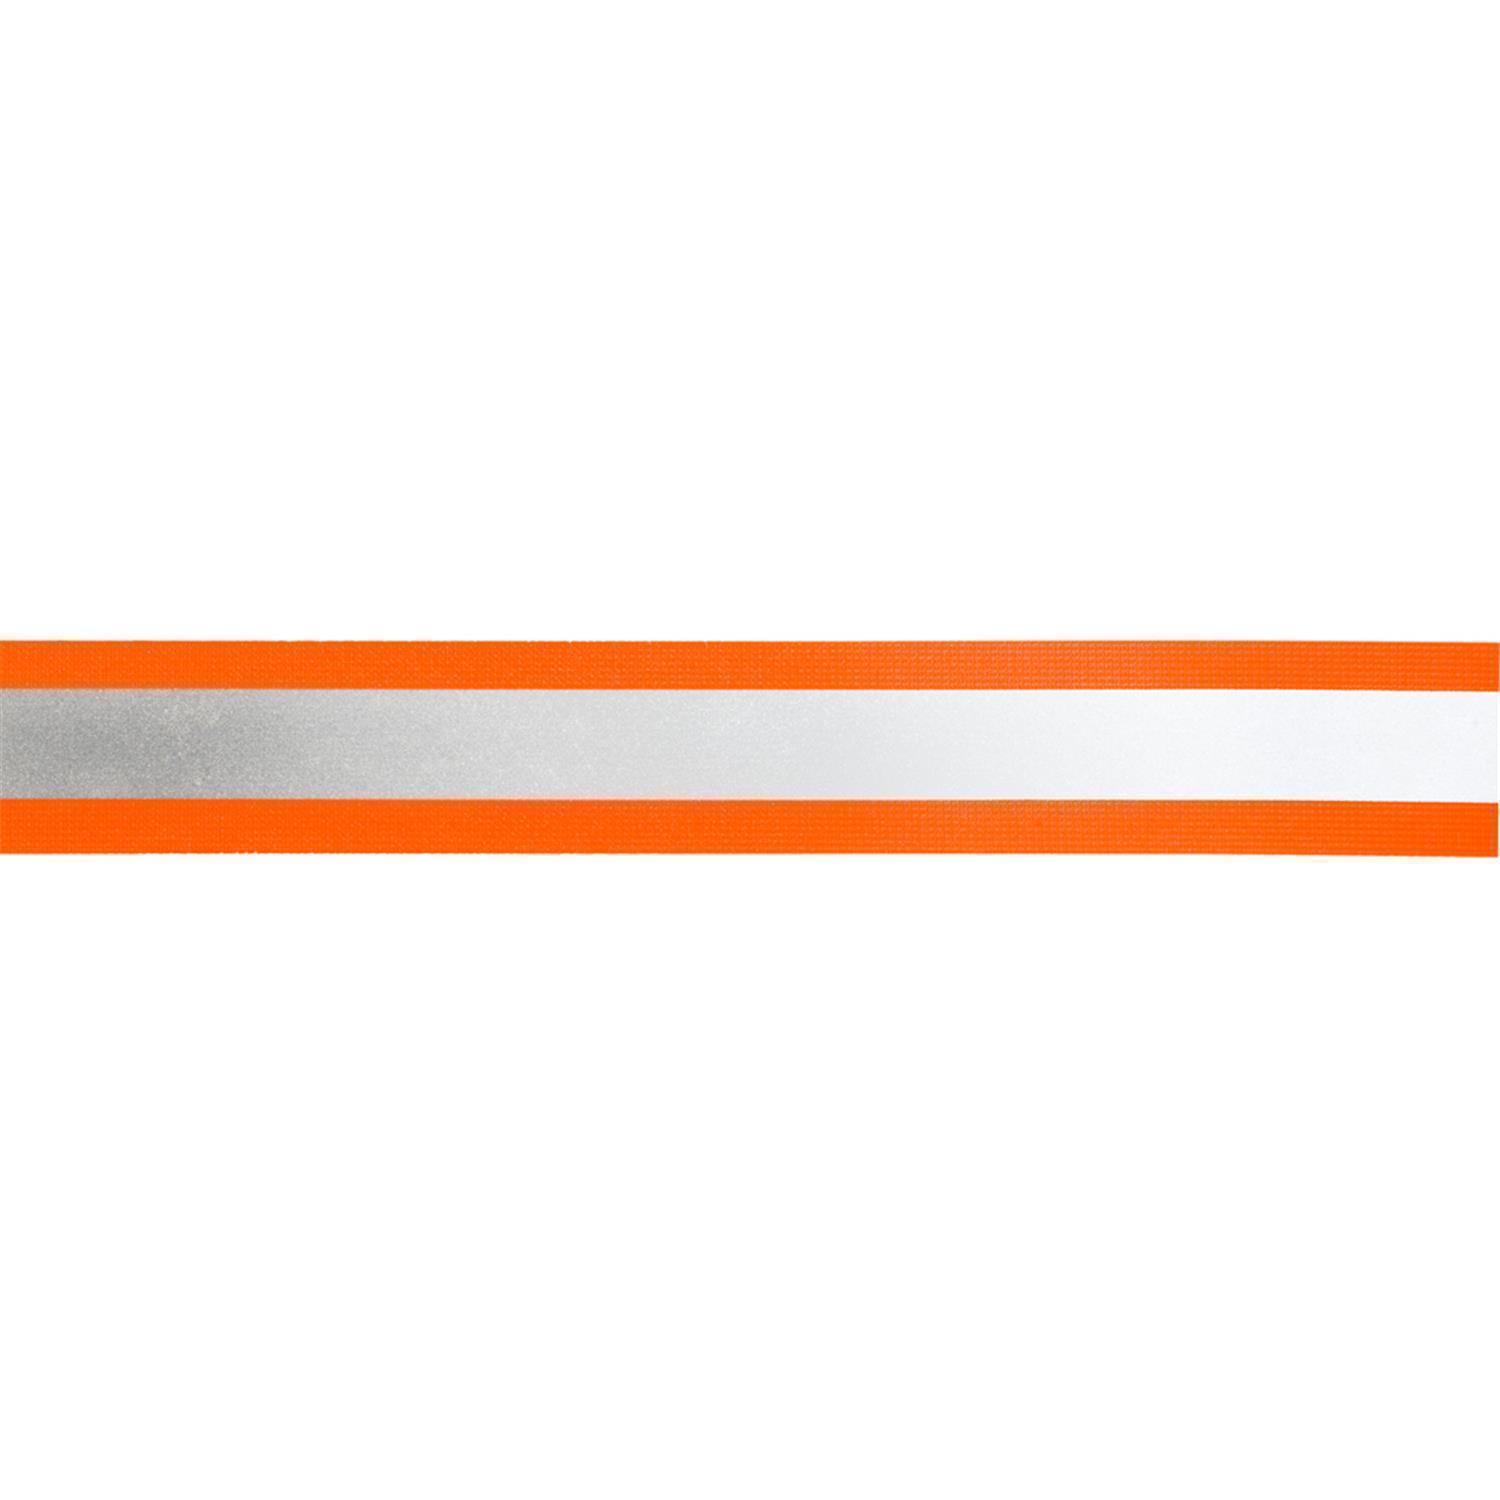 Reflektorband 60mm breit in 2 Farben orange-silber 10 Meter